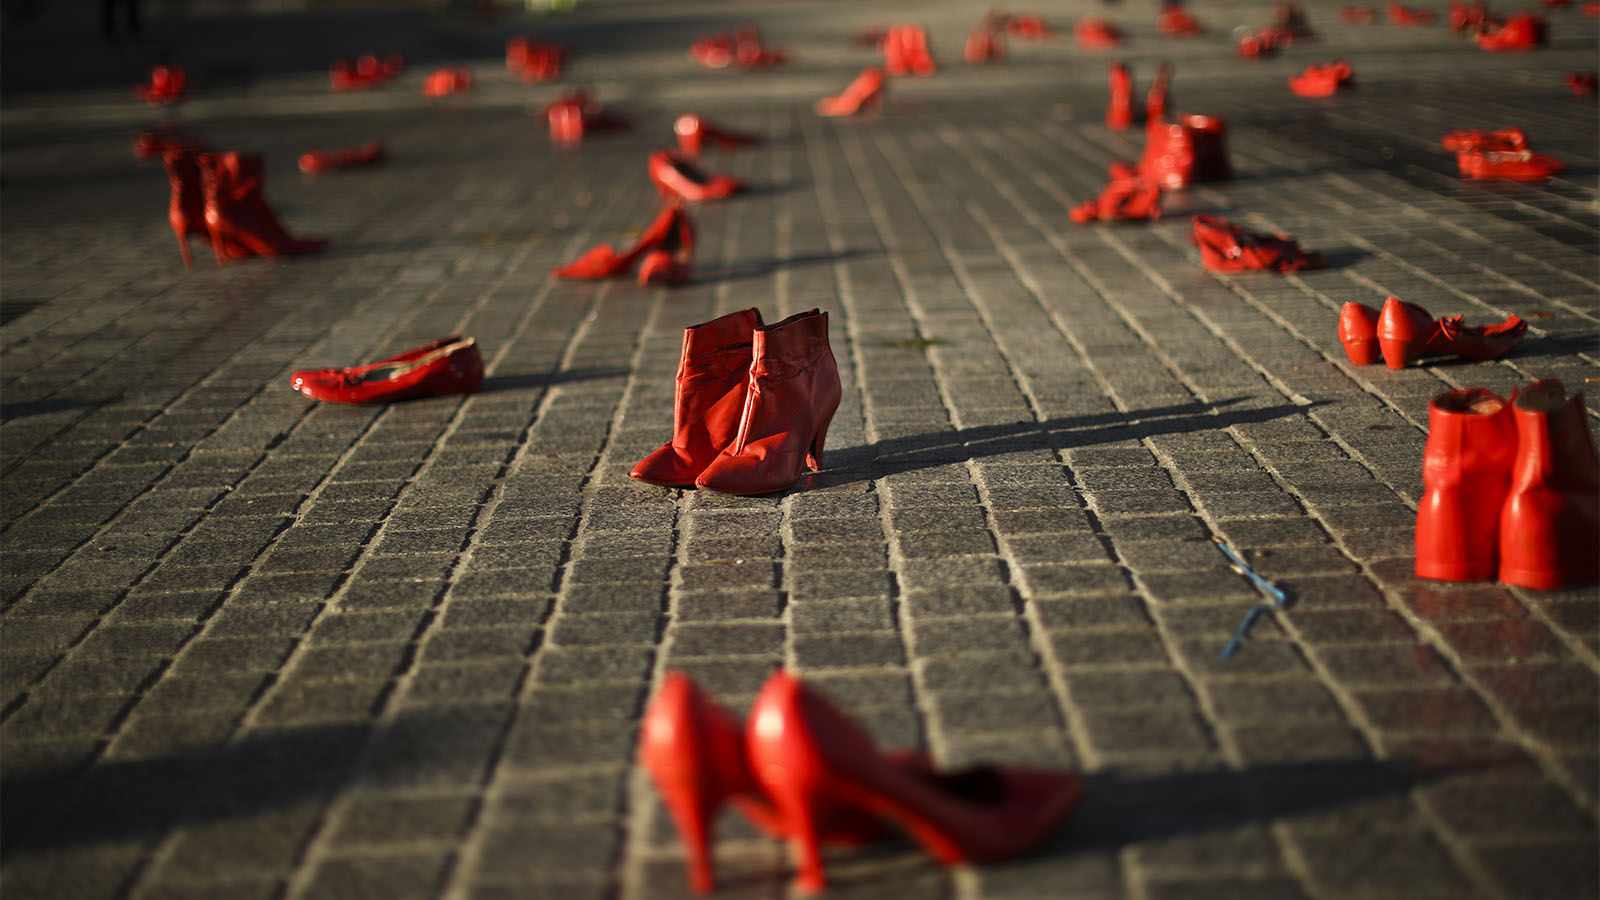 עוברי אורח צועדים ליד עשרות נעלי נשים צבועות באדום המונחות על המדרכה כחלק ממיצג המיועד לעורר מודעות לאלימות המופנית כנגד נשים. בריסל. (AP Photo/Francisco Seco)